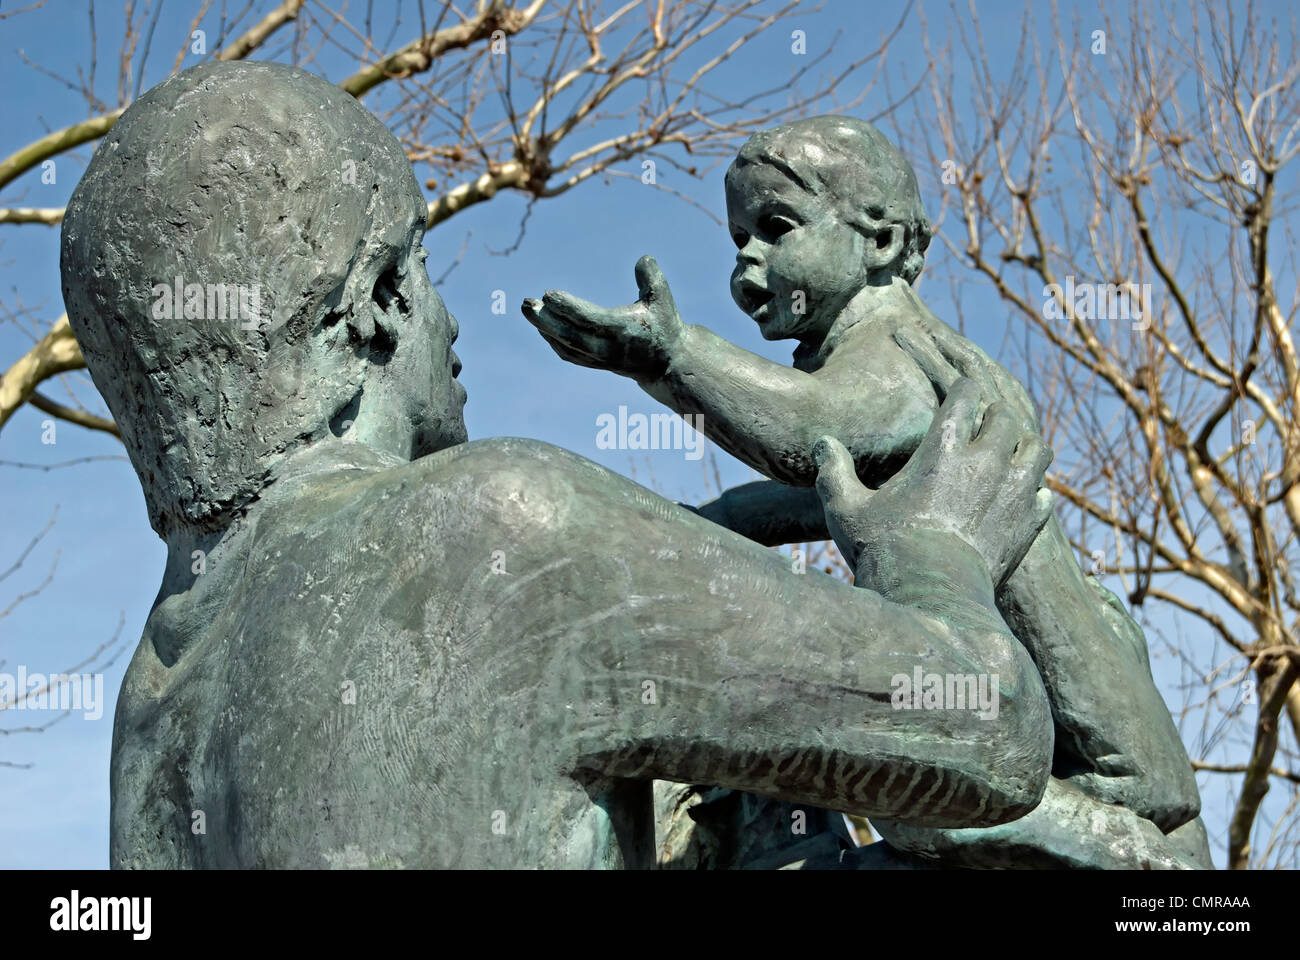 Dettaglio del in città, una scultura in bronzo di Giovanni ravera, in Battersea, Londra, Inghilterra Foto Stock